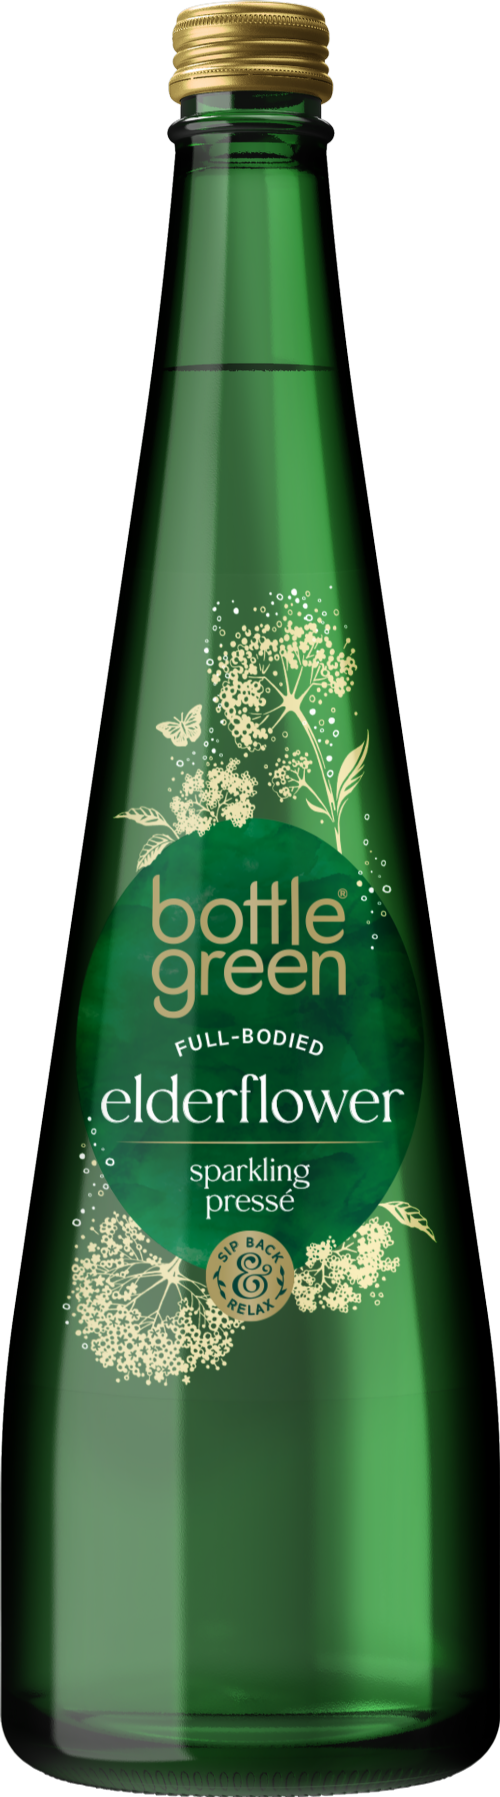 BOTTLE GREEN Full-Bodied Elderflower Sparkling Presse 750ml